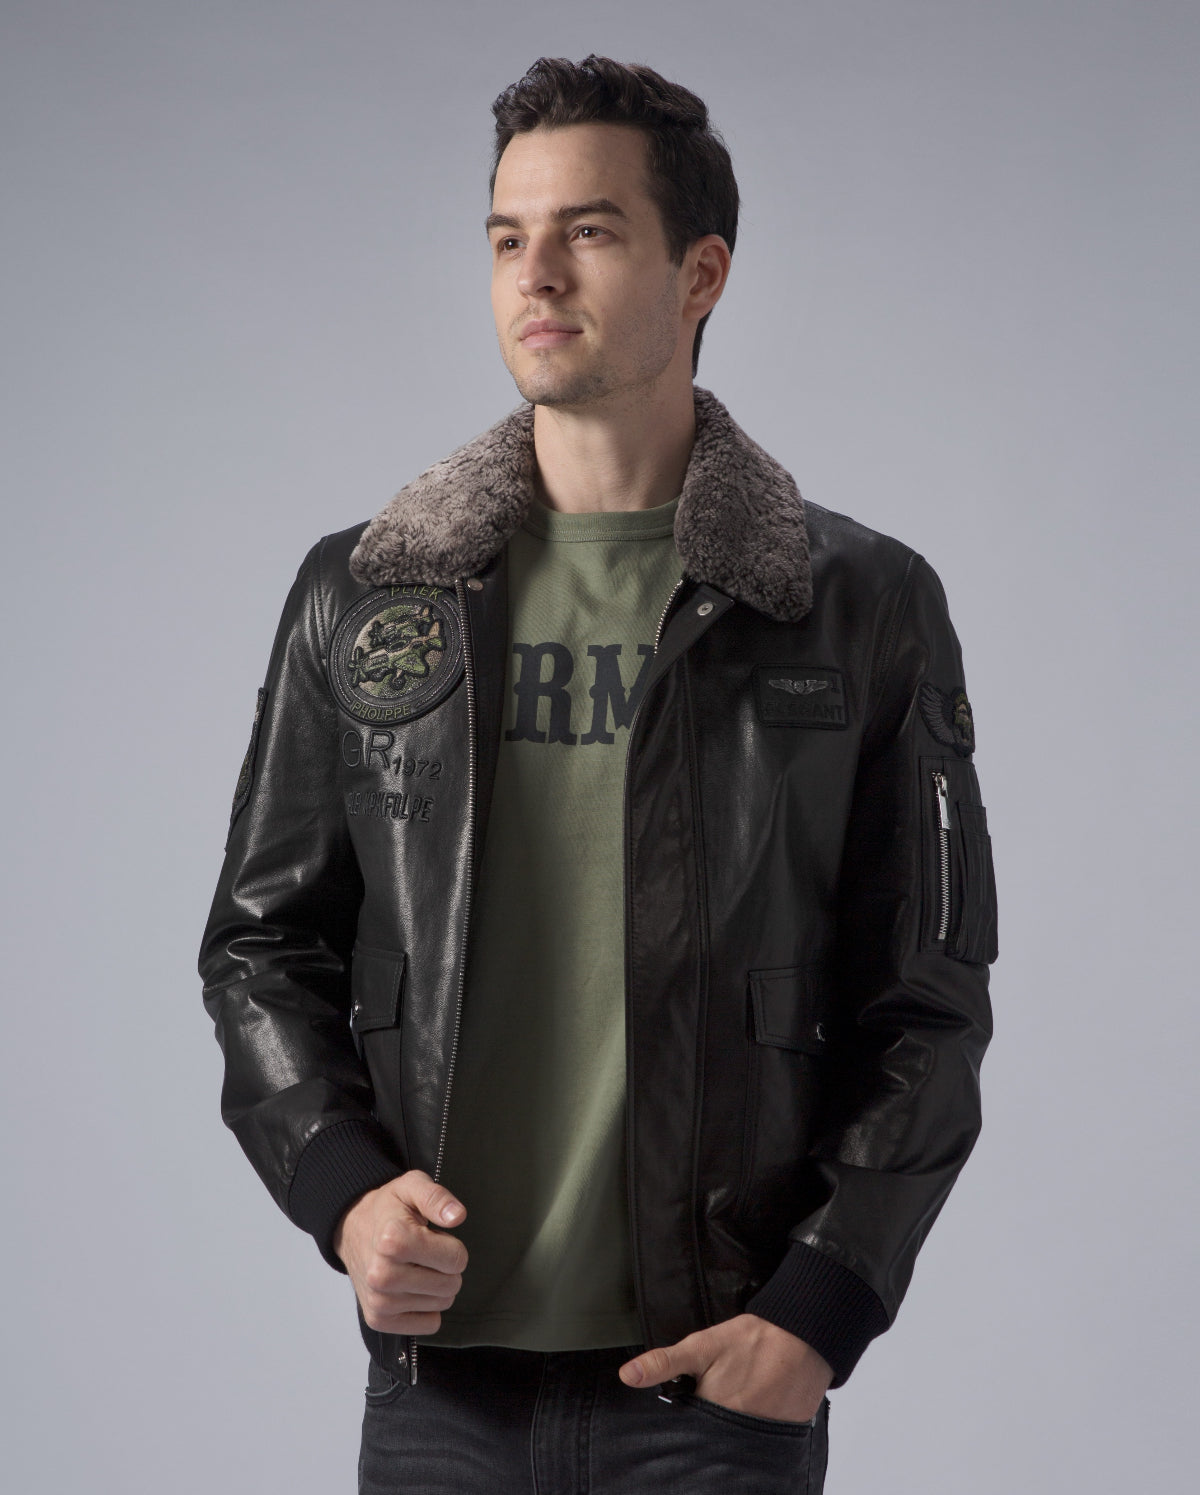 30% OFF Hot Sale Washington Redskins Leather Jacket For Men – 4 Fan Shop